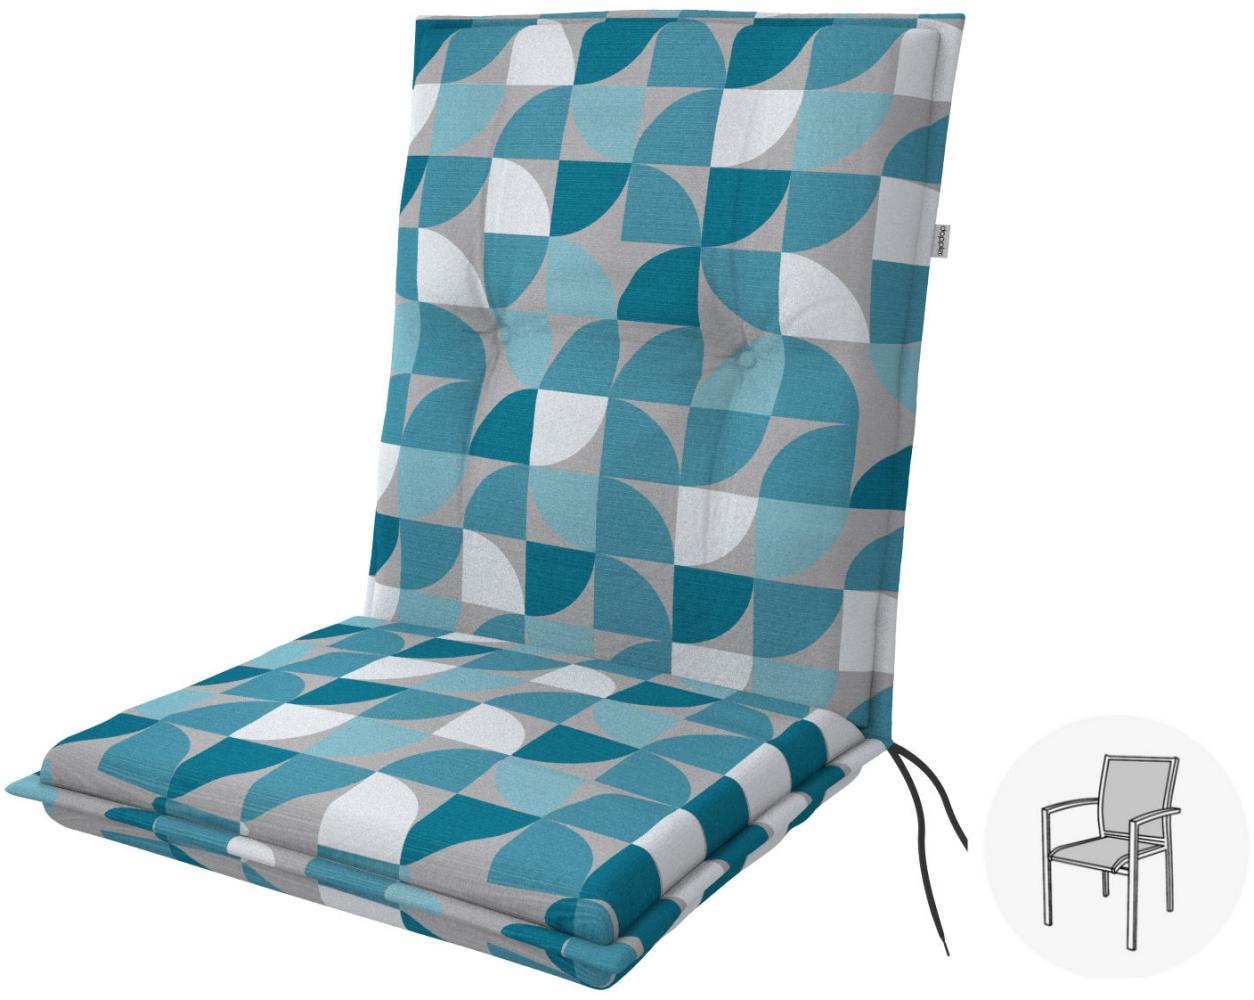 Doppler Sitzauflage "Living" Low, kreis blau, für Niederlehner (100 x 48 x 6 cm) Bild 1